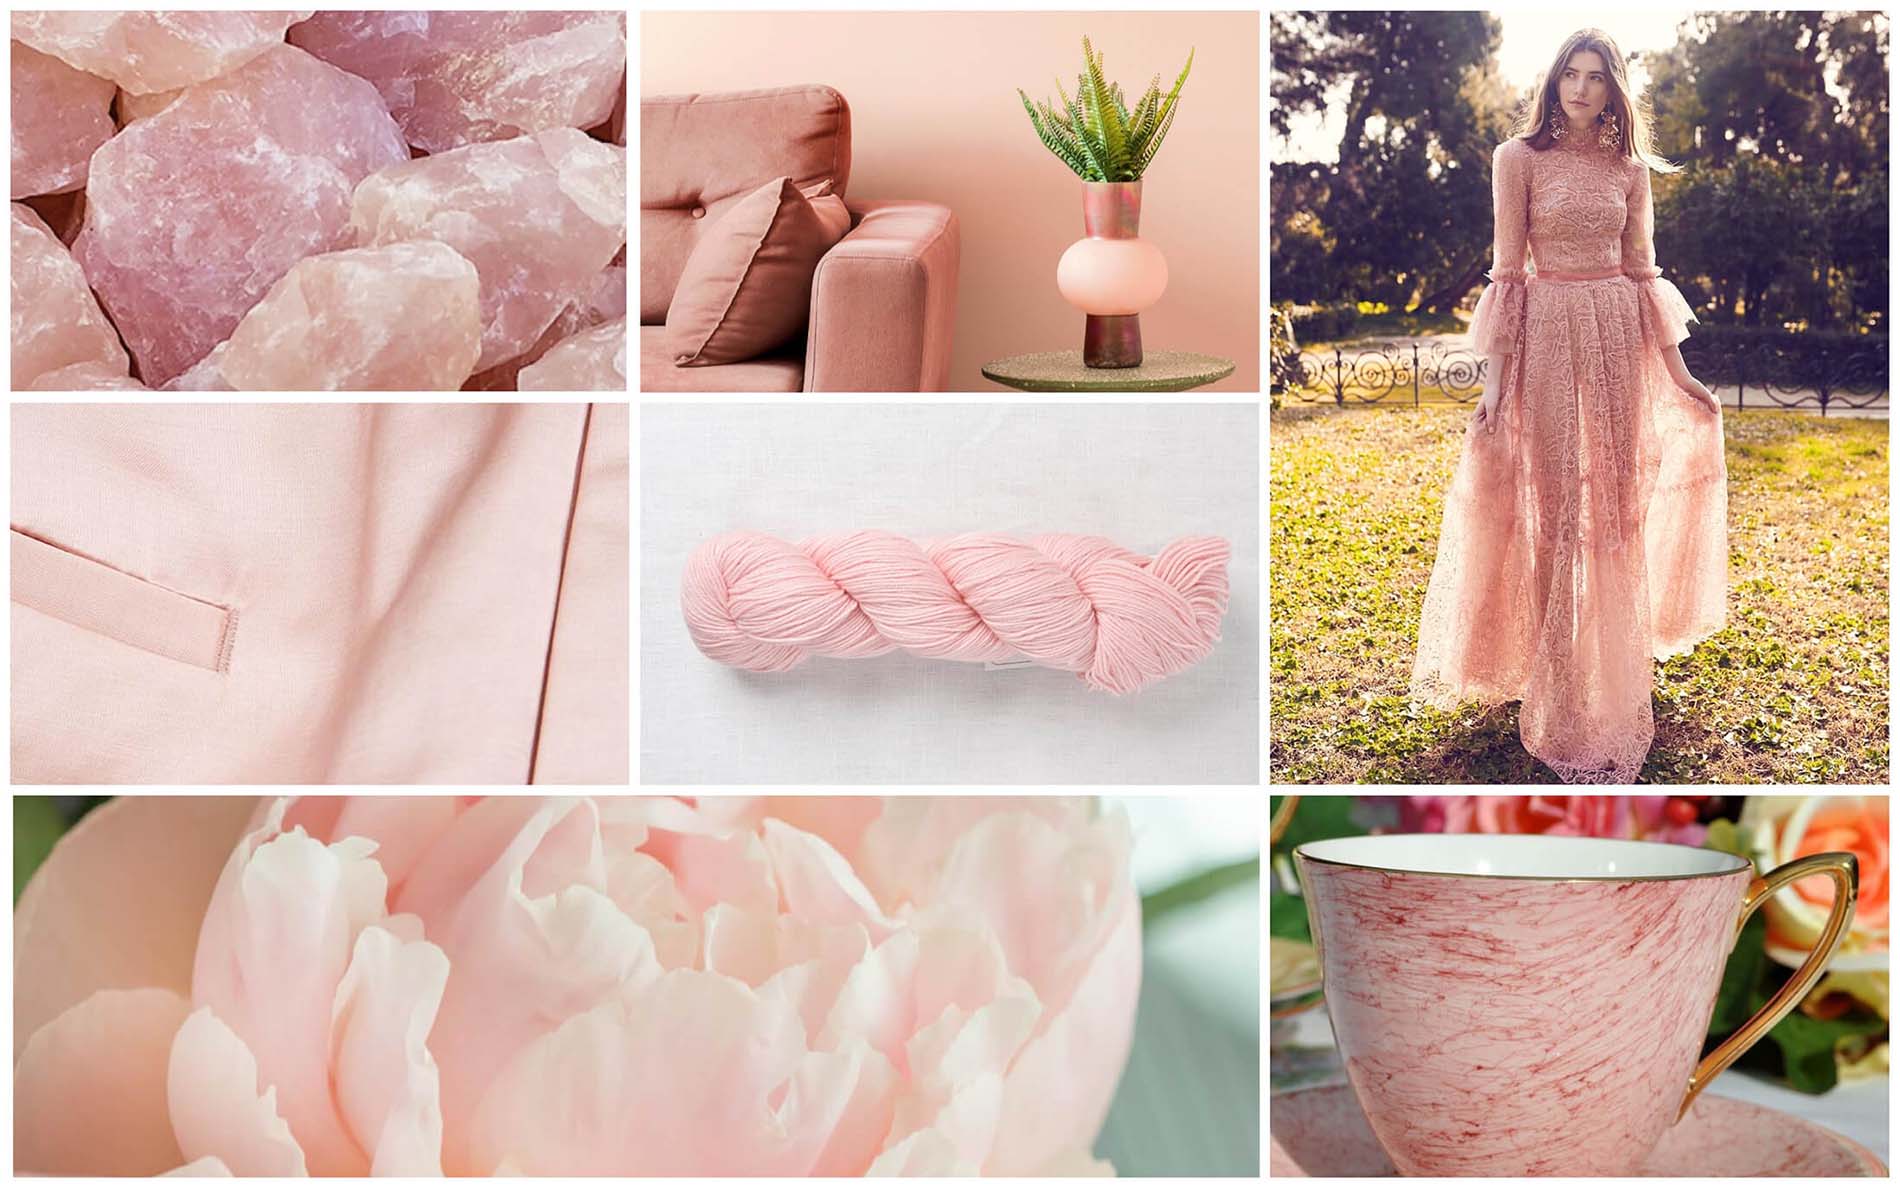 Gossamer pink - нежный, бледно розовый. Модные цвета и оттенки 2022 Пантон - палитра весна лета 2022 по версии института цвета